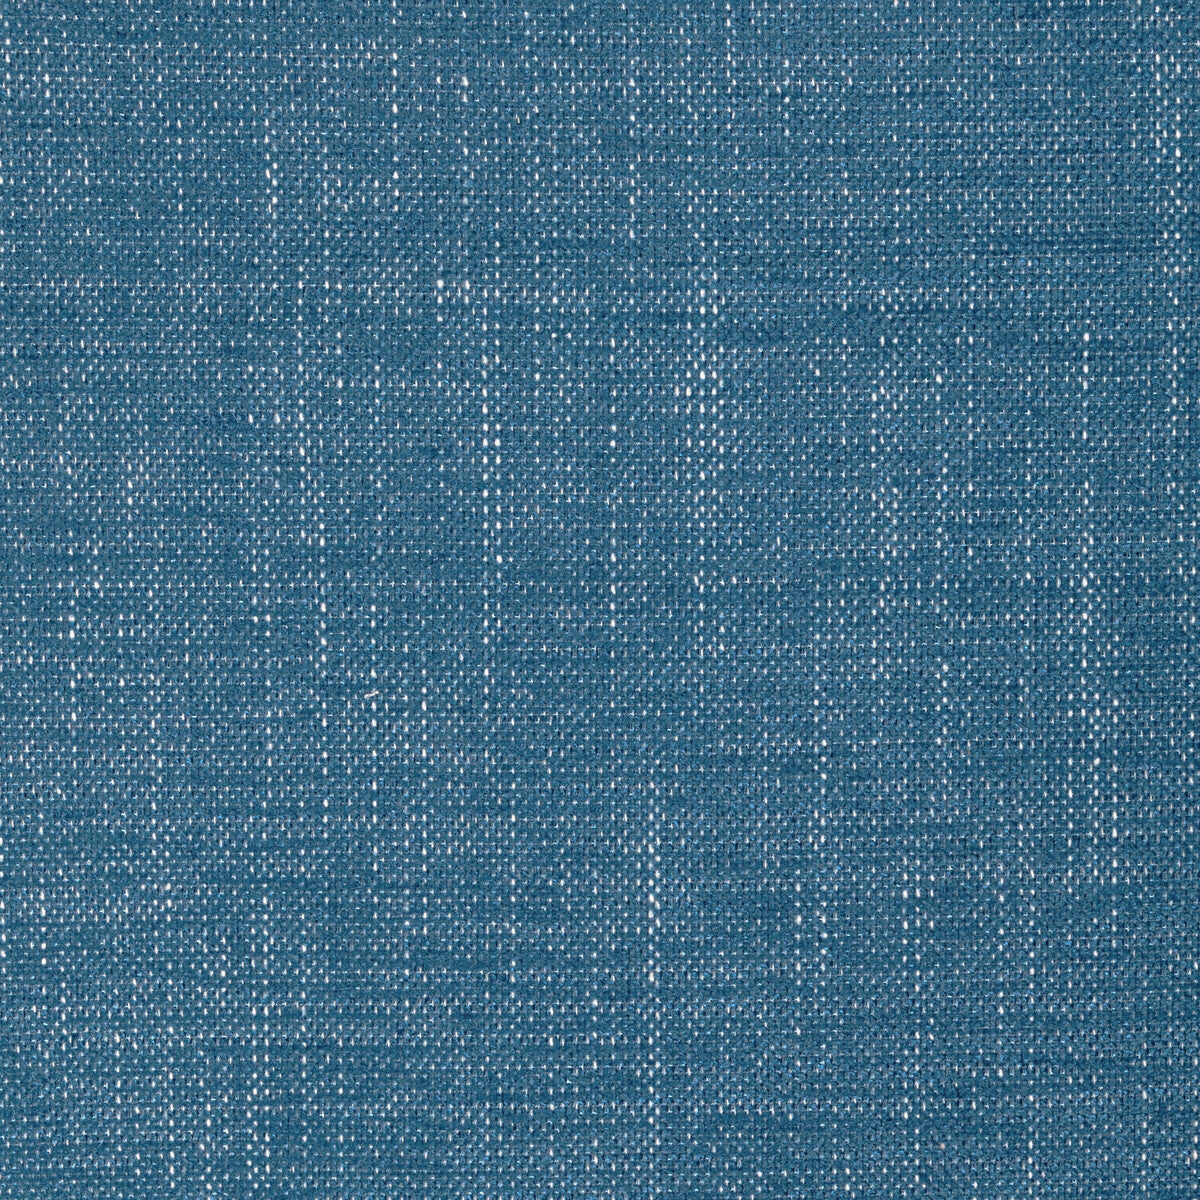 Poet Plain fabric in indigo color - pattern 36649.5.0 - by Kravet Basics